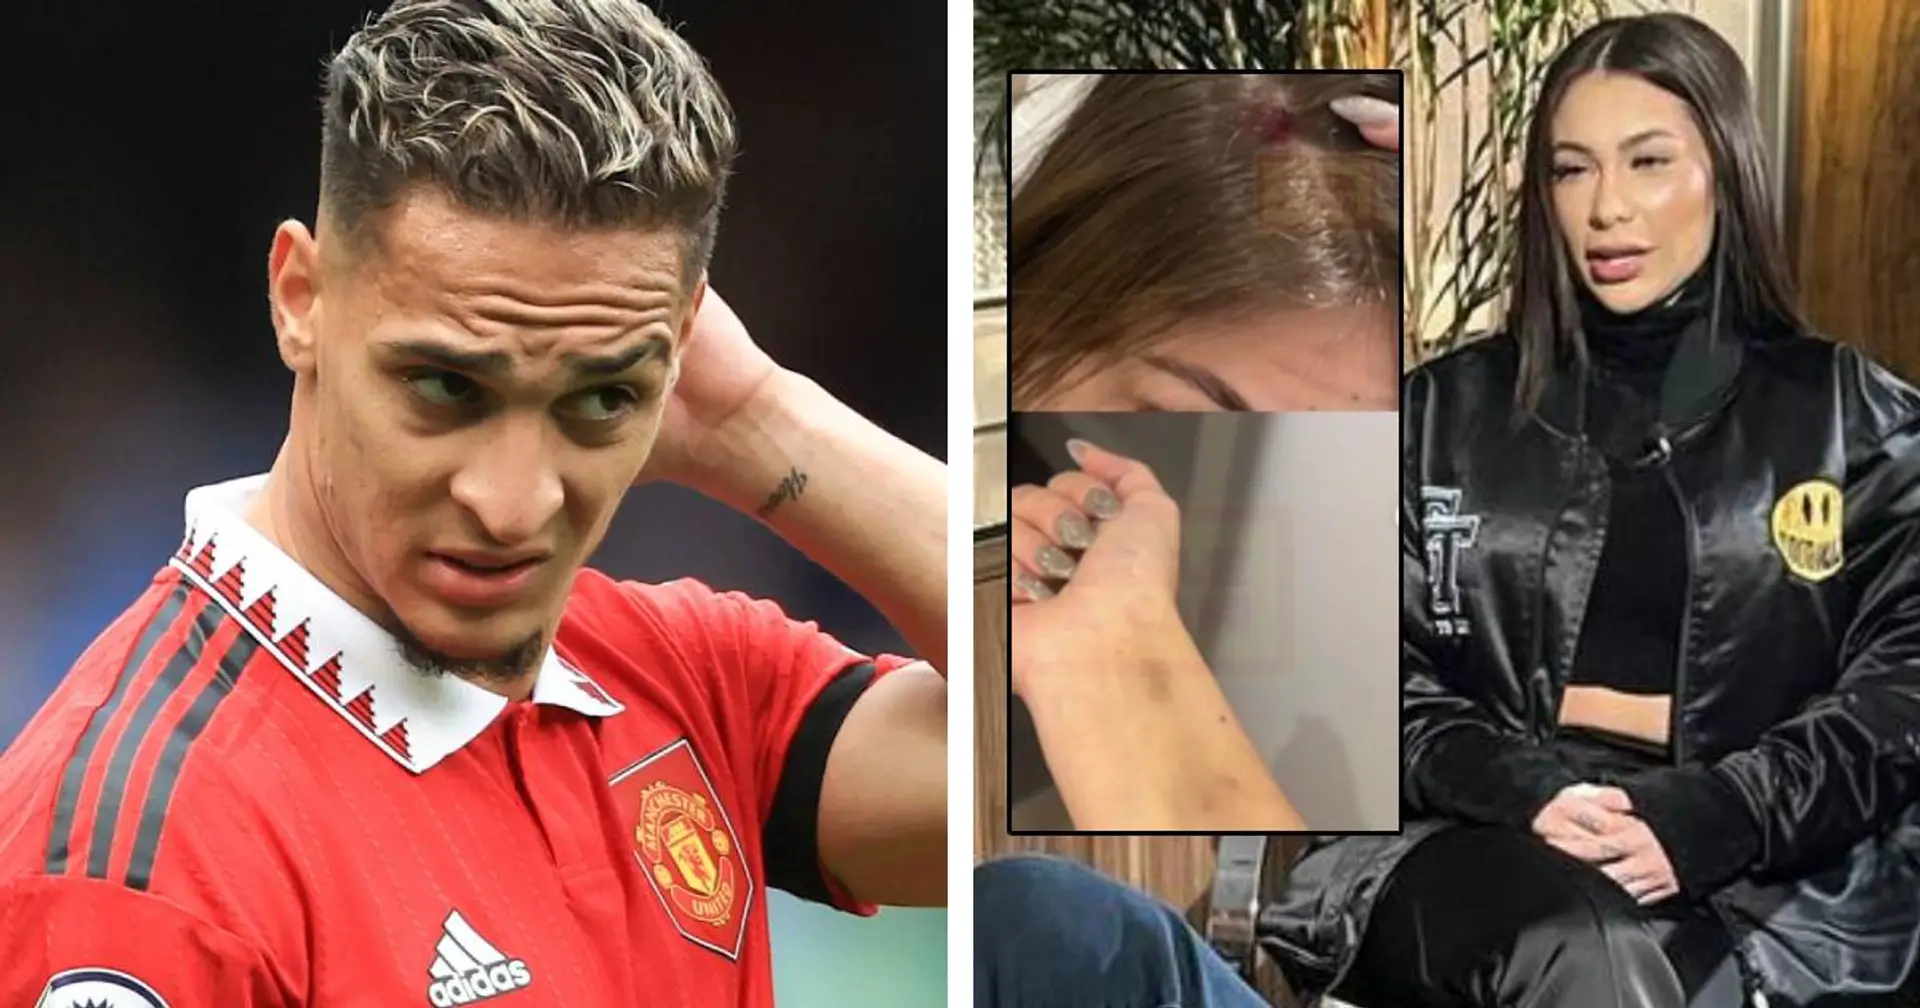 Guai per la stella del Manchester United, l'accusa dell'ex fidanzata: "Tremavo di paura"